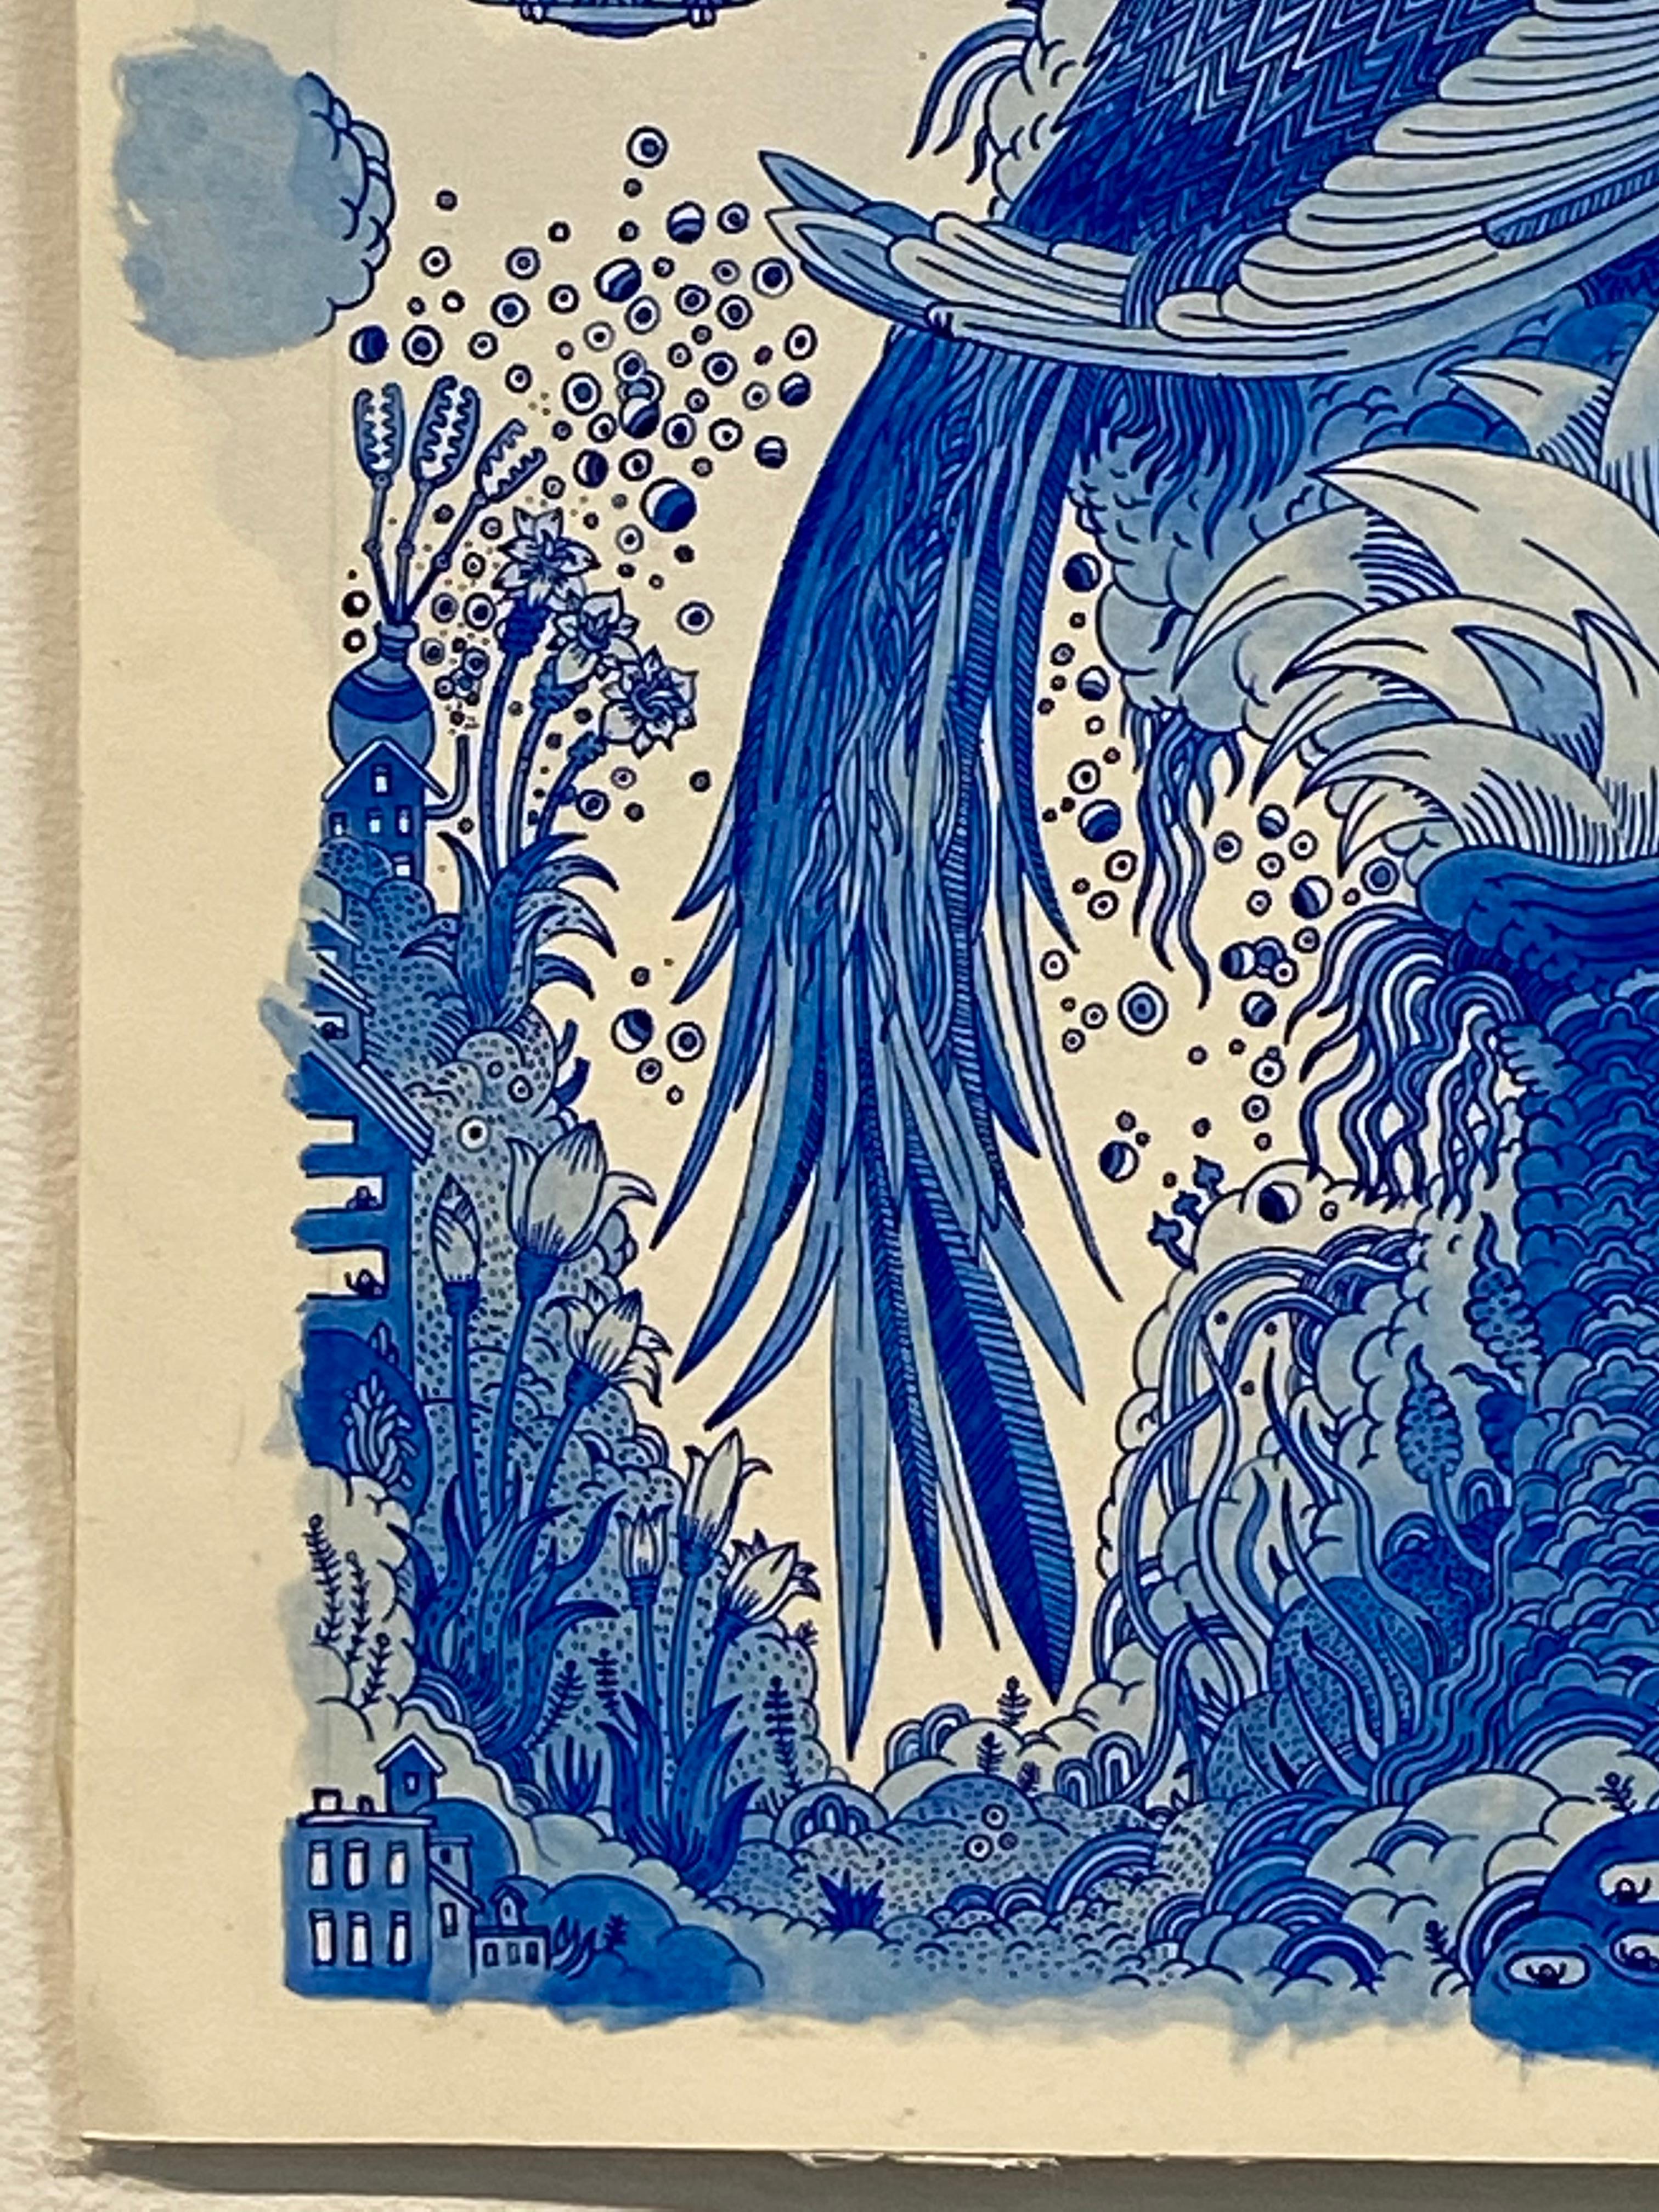 Blauer Vogelbotic, Blauer Vogel, Blumen, Spacecraft, Skurrile Fantasie-Landschaft (Zeitgenössisch), Painting, von Peter Hamlin